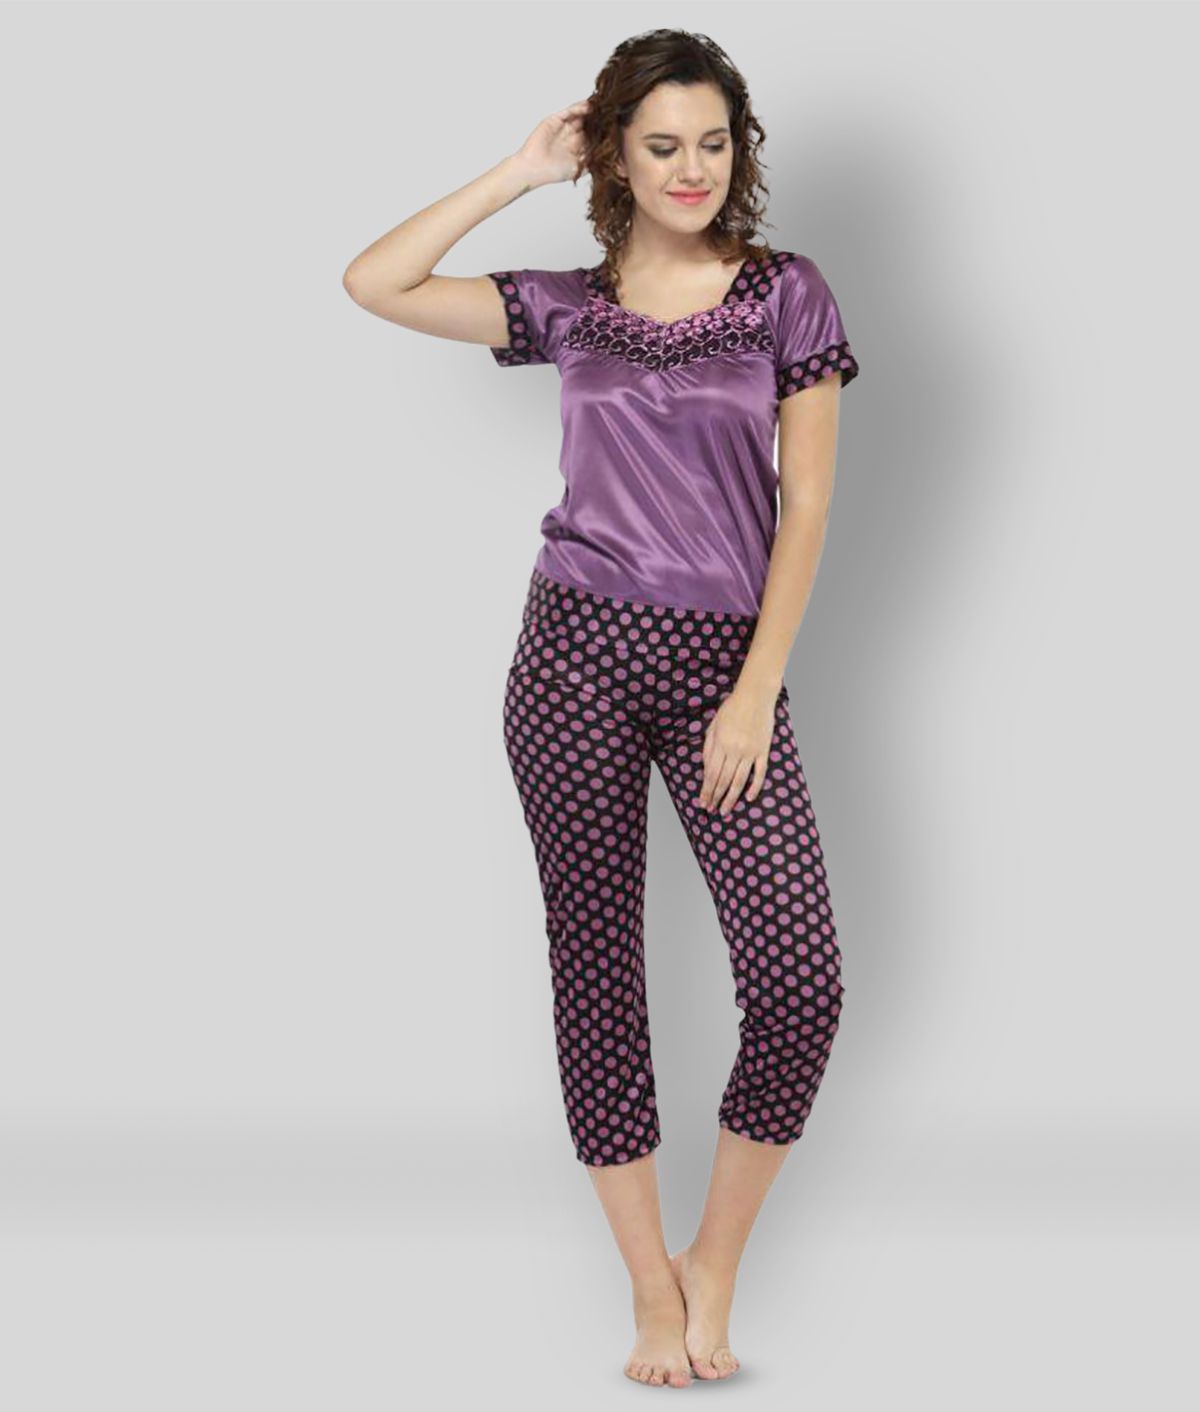     			N-Gal - Purple Satin Women's Nightwear Nightsuit Sets ( Pack of 1 )